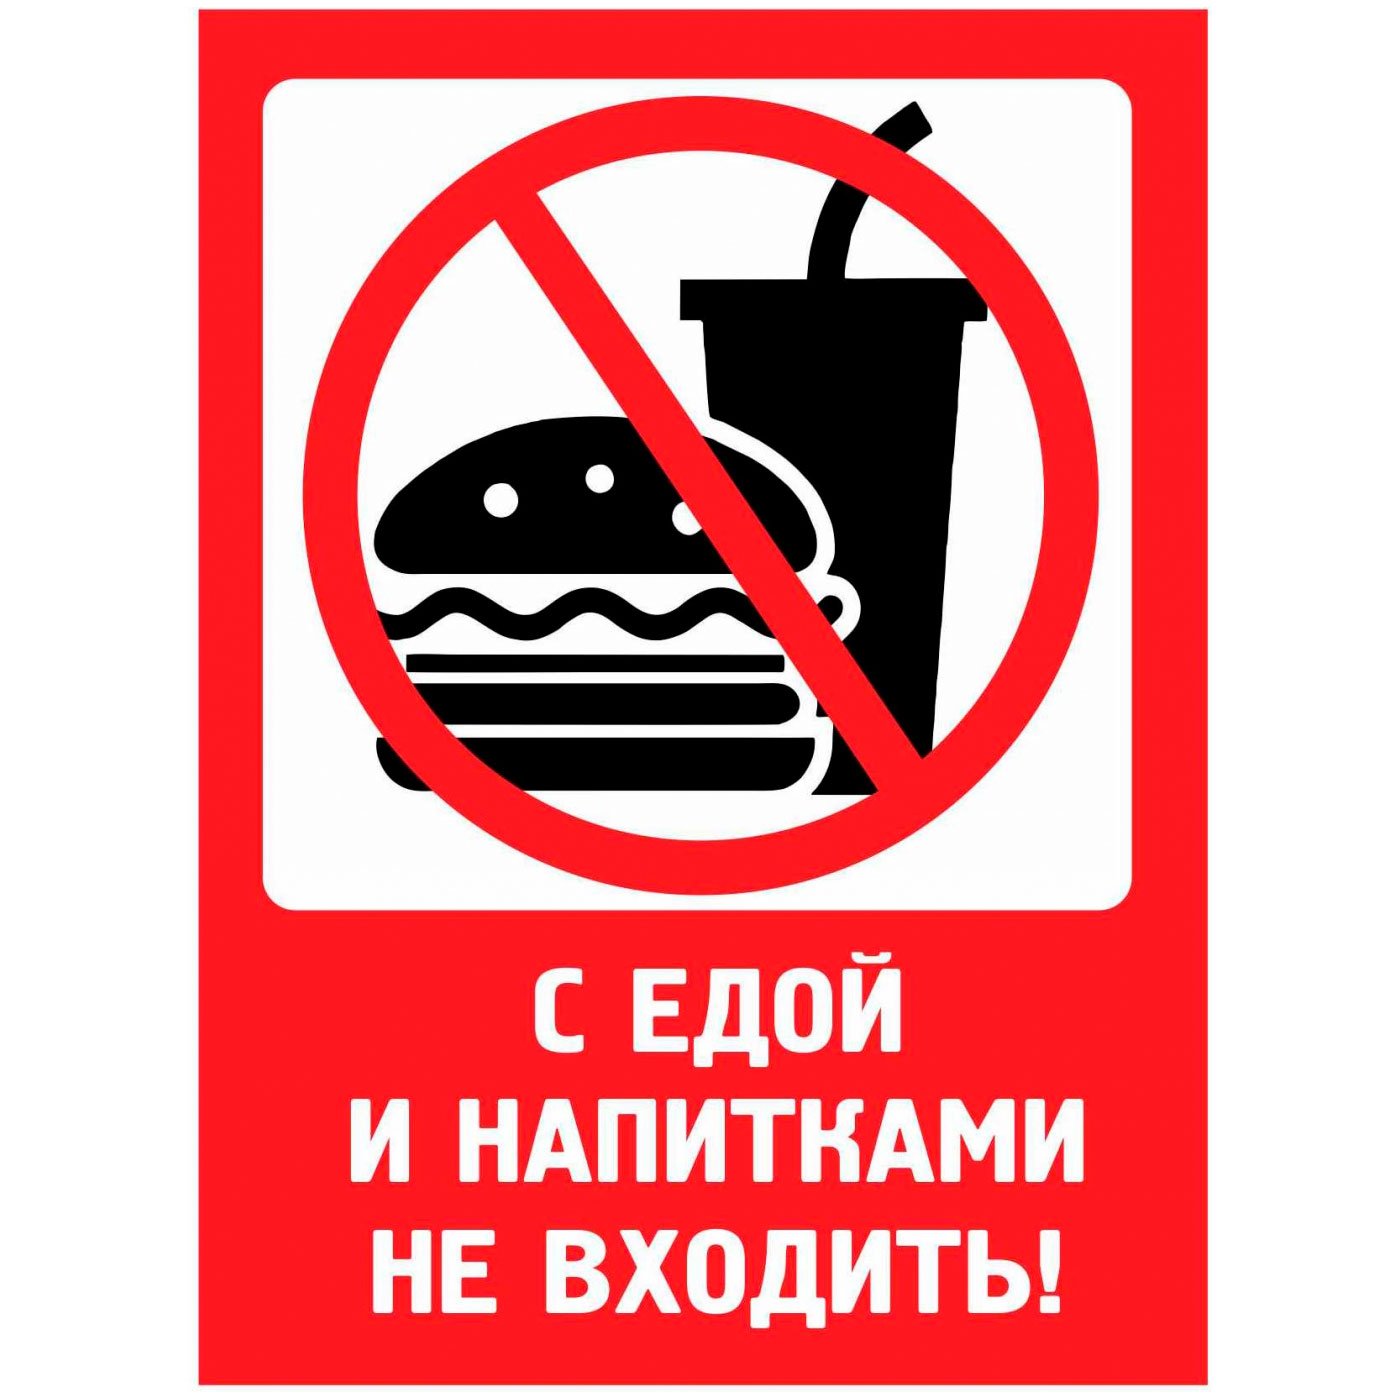 Запрет есть на рабочем месте. Вход с напитками и едой запрещен табличка. С свой едой и напитками. С едой и напитками не входить табличка. Со своей едой и напитакамизапрещено.